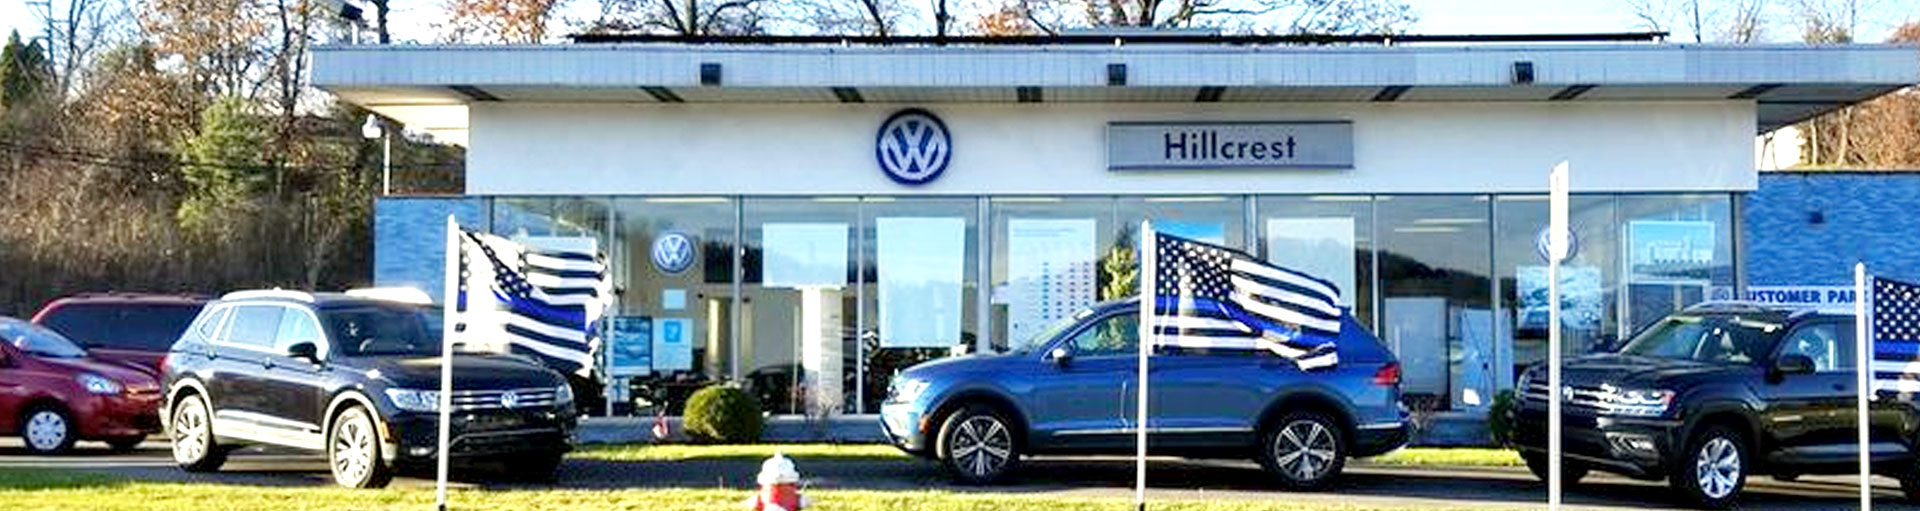 Hillcrest Volkswagen Service Center